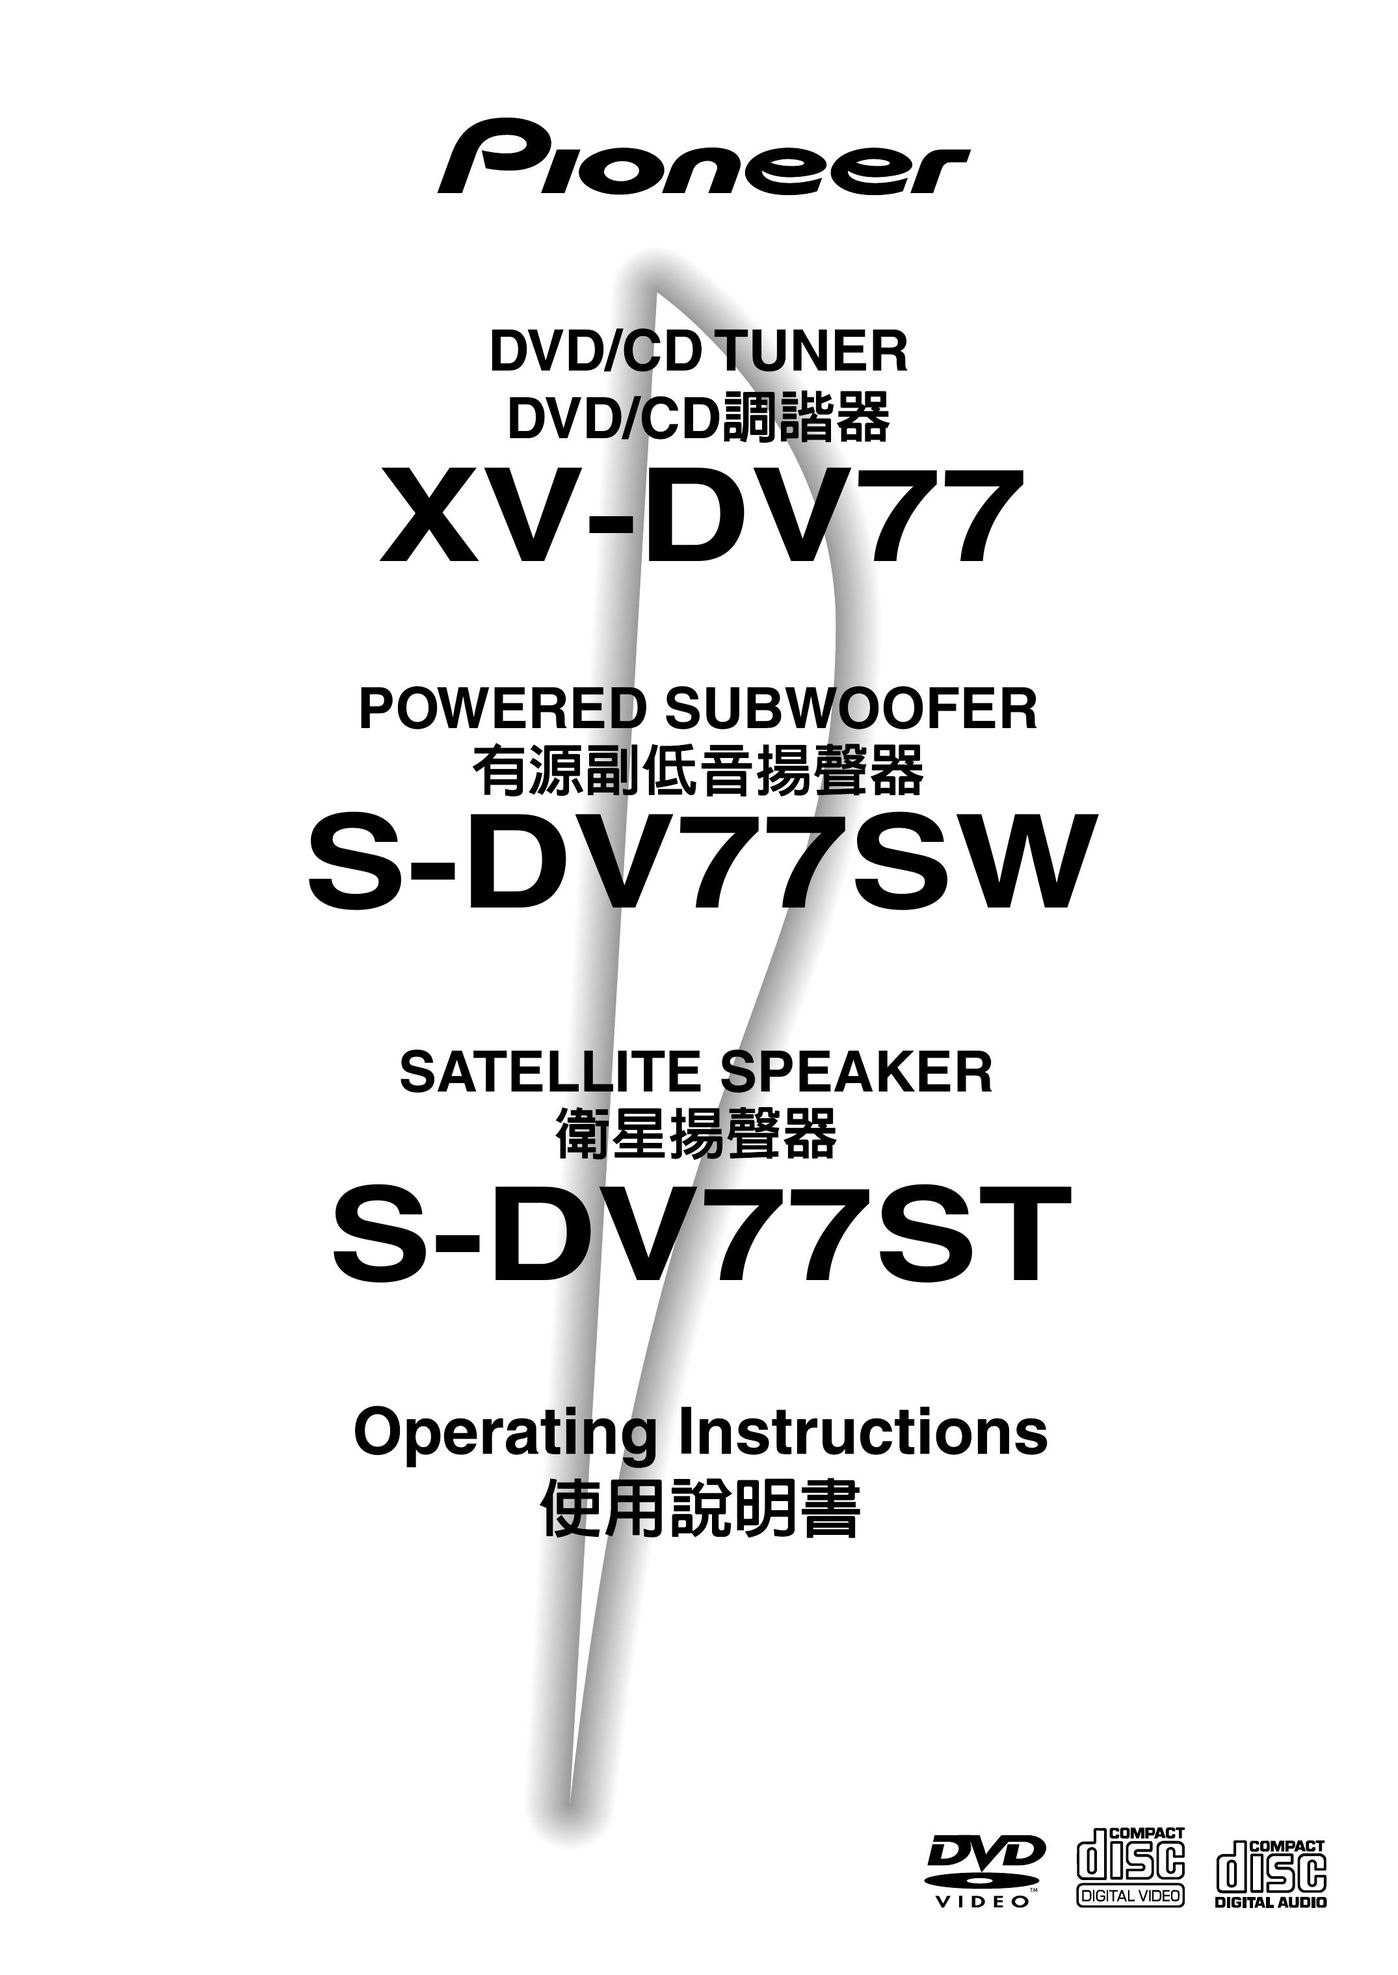 Pioneer S-DV77SW Speaker User Manual